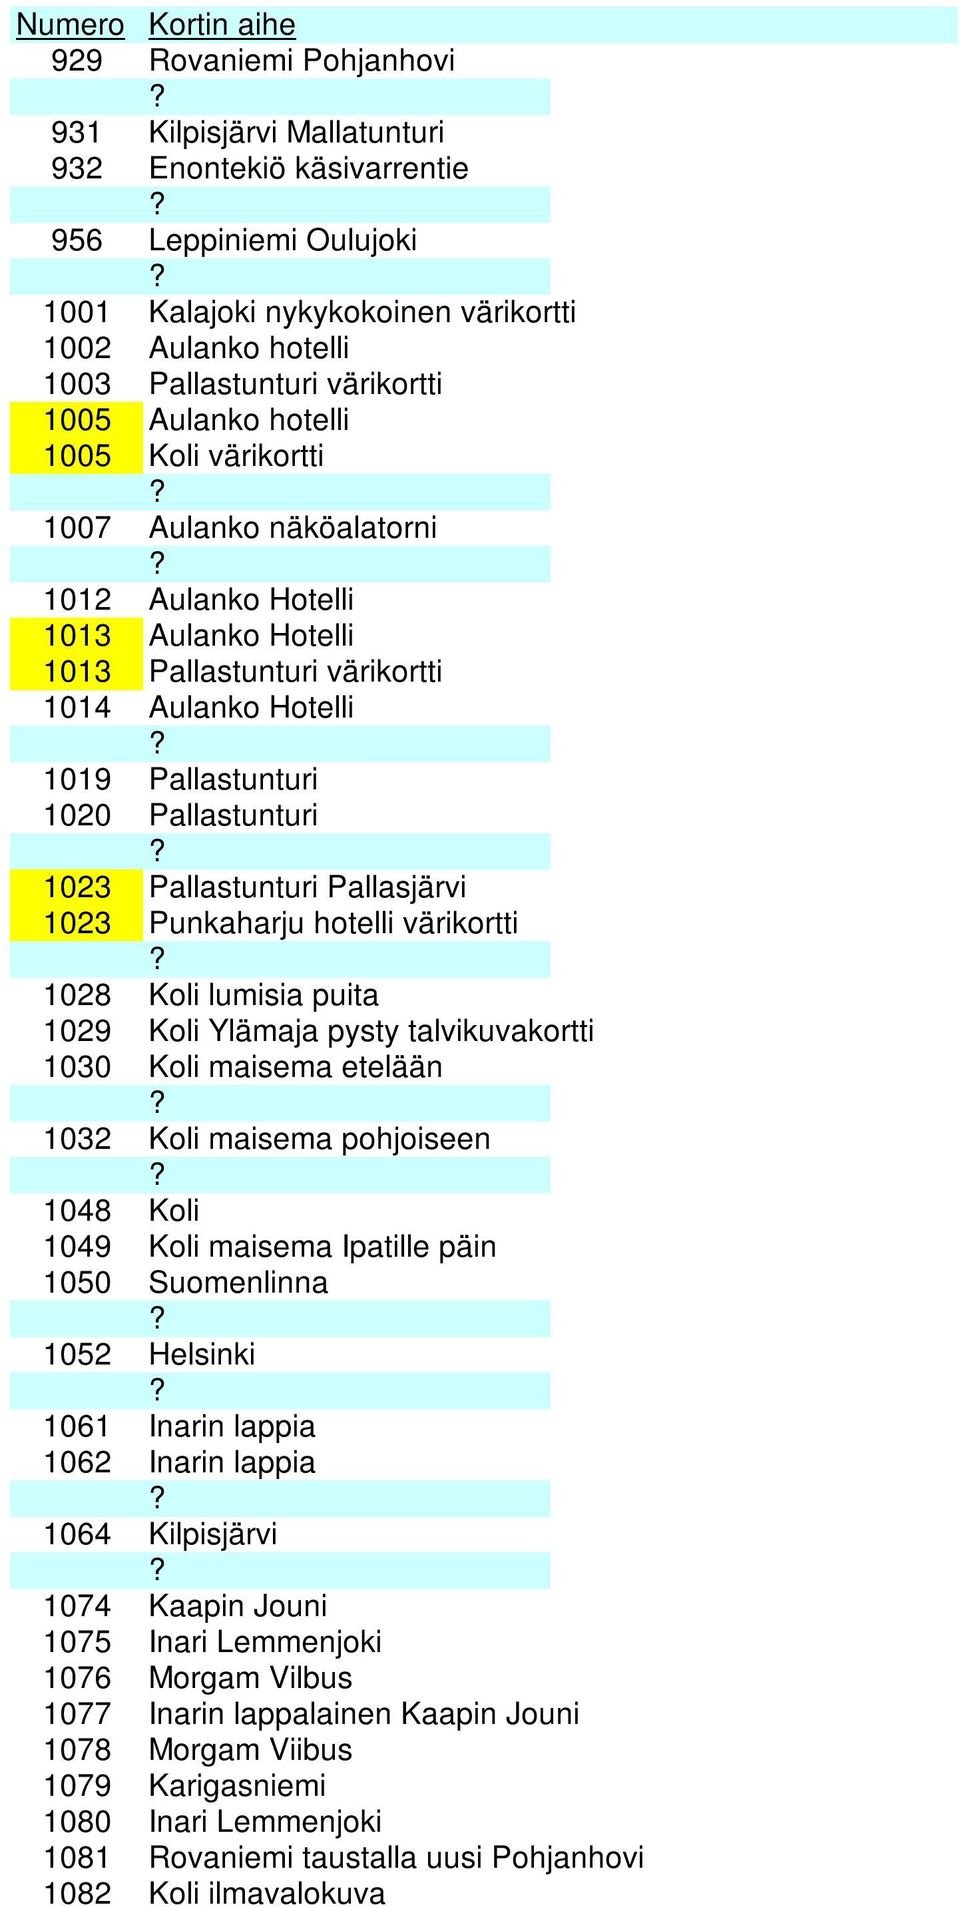 Pallastunturi Pallasjärvi 1023 Punkaharju hotelli värikortti 1028 Koli lumisia puita 1029 Koli Ylämaja pysty talvikuvakortti 1030 Koli maisema etelään 1032 Koli maisema pohjoiseen 1048 Koli 1049 Koli